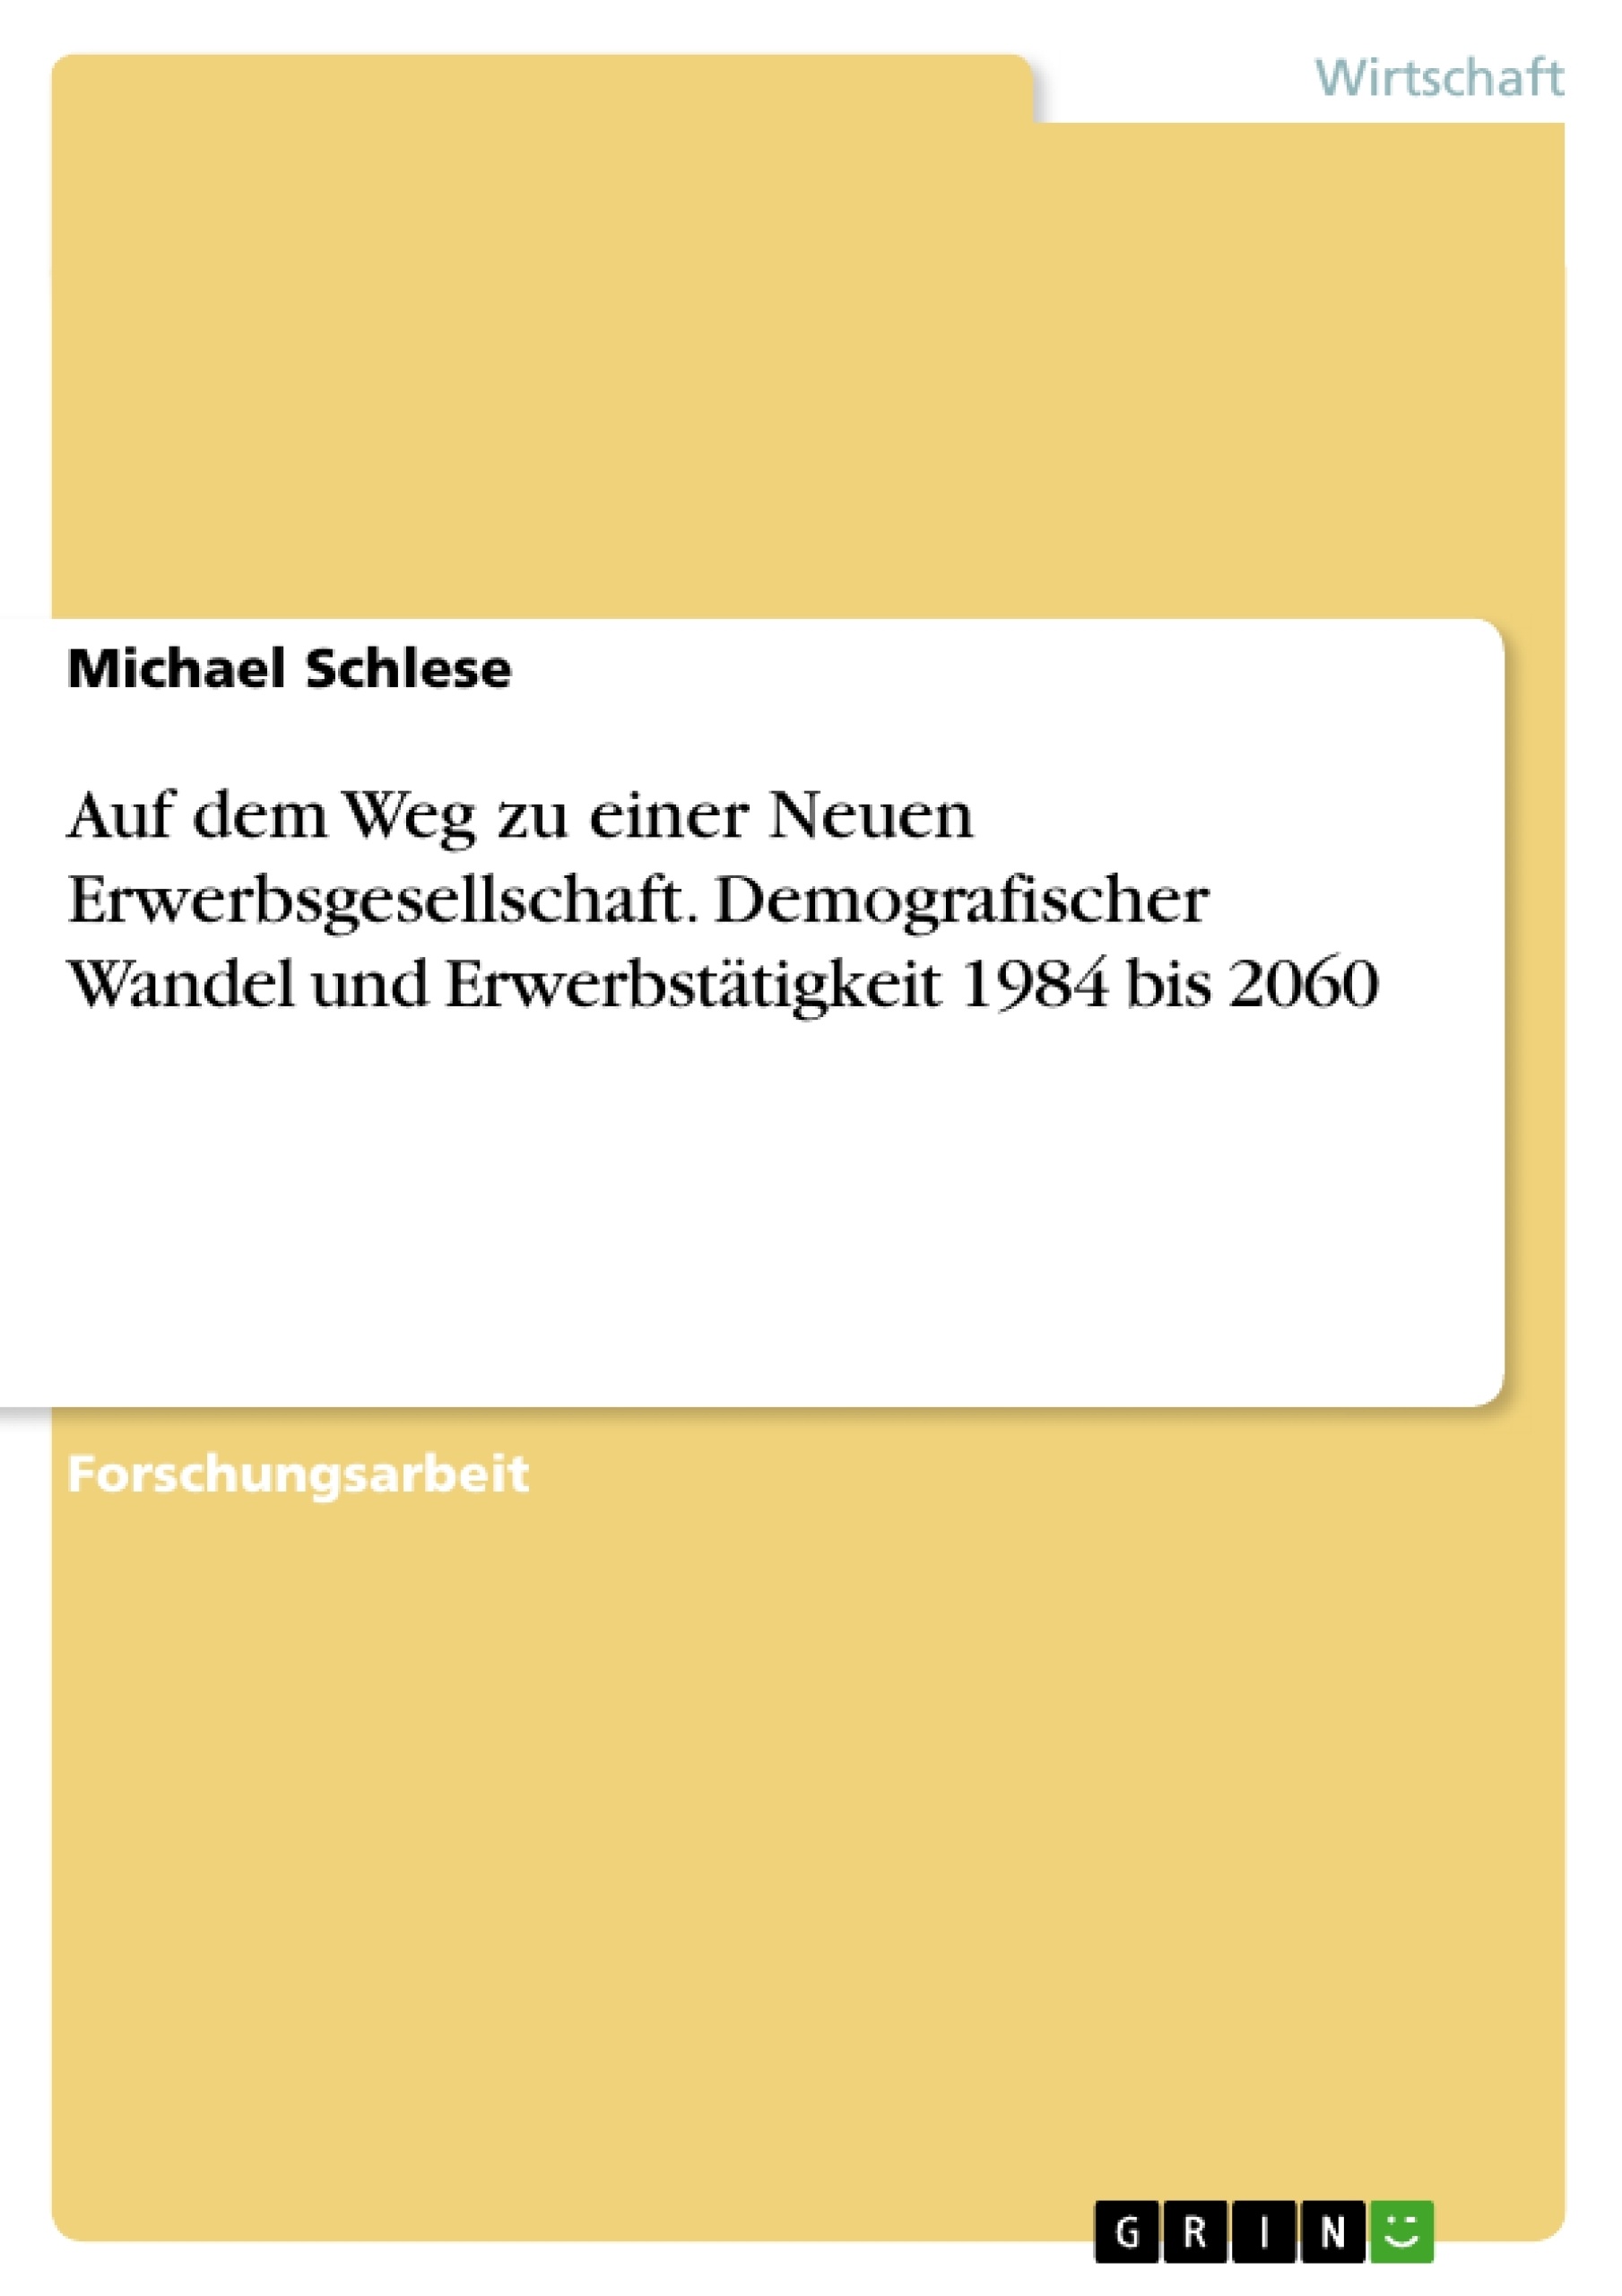 Título: Auf dem Weg zu einer  Neuen Erwerbsgesellschaft. Demografischer Wandel und Erwerbstätigkeit 1984 bis 2060